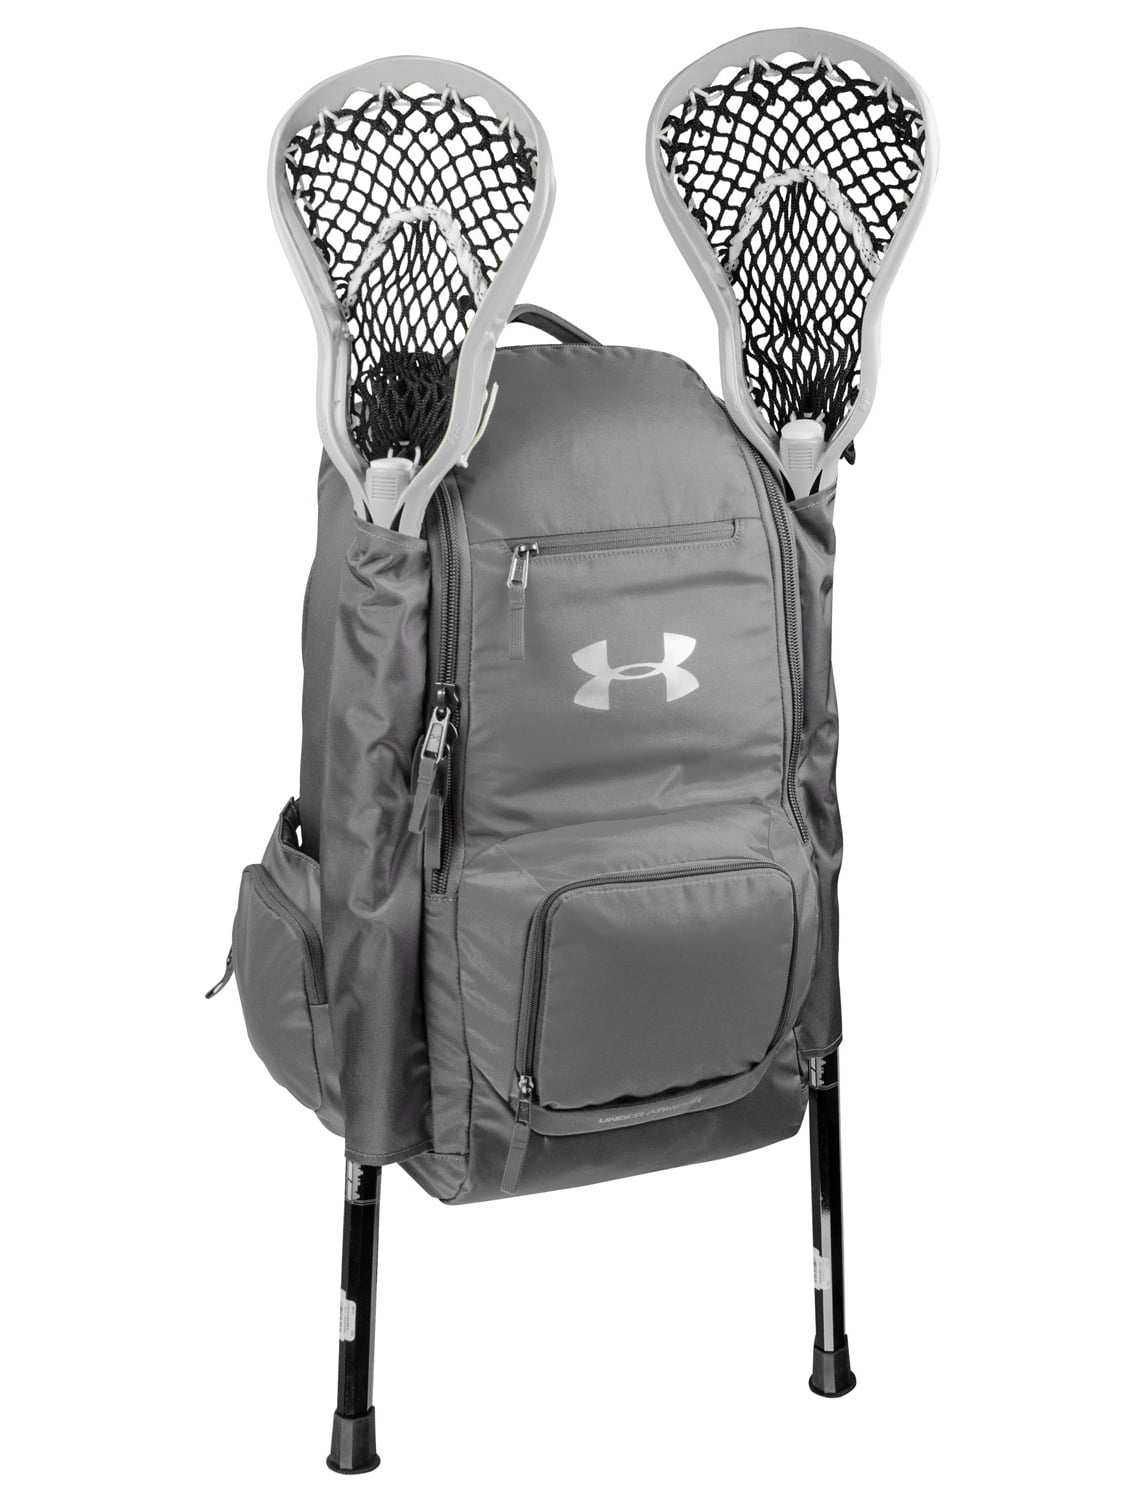 lacrosse gear bag